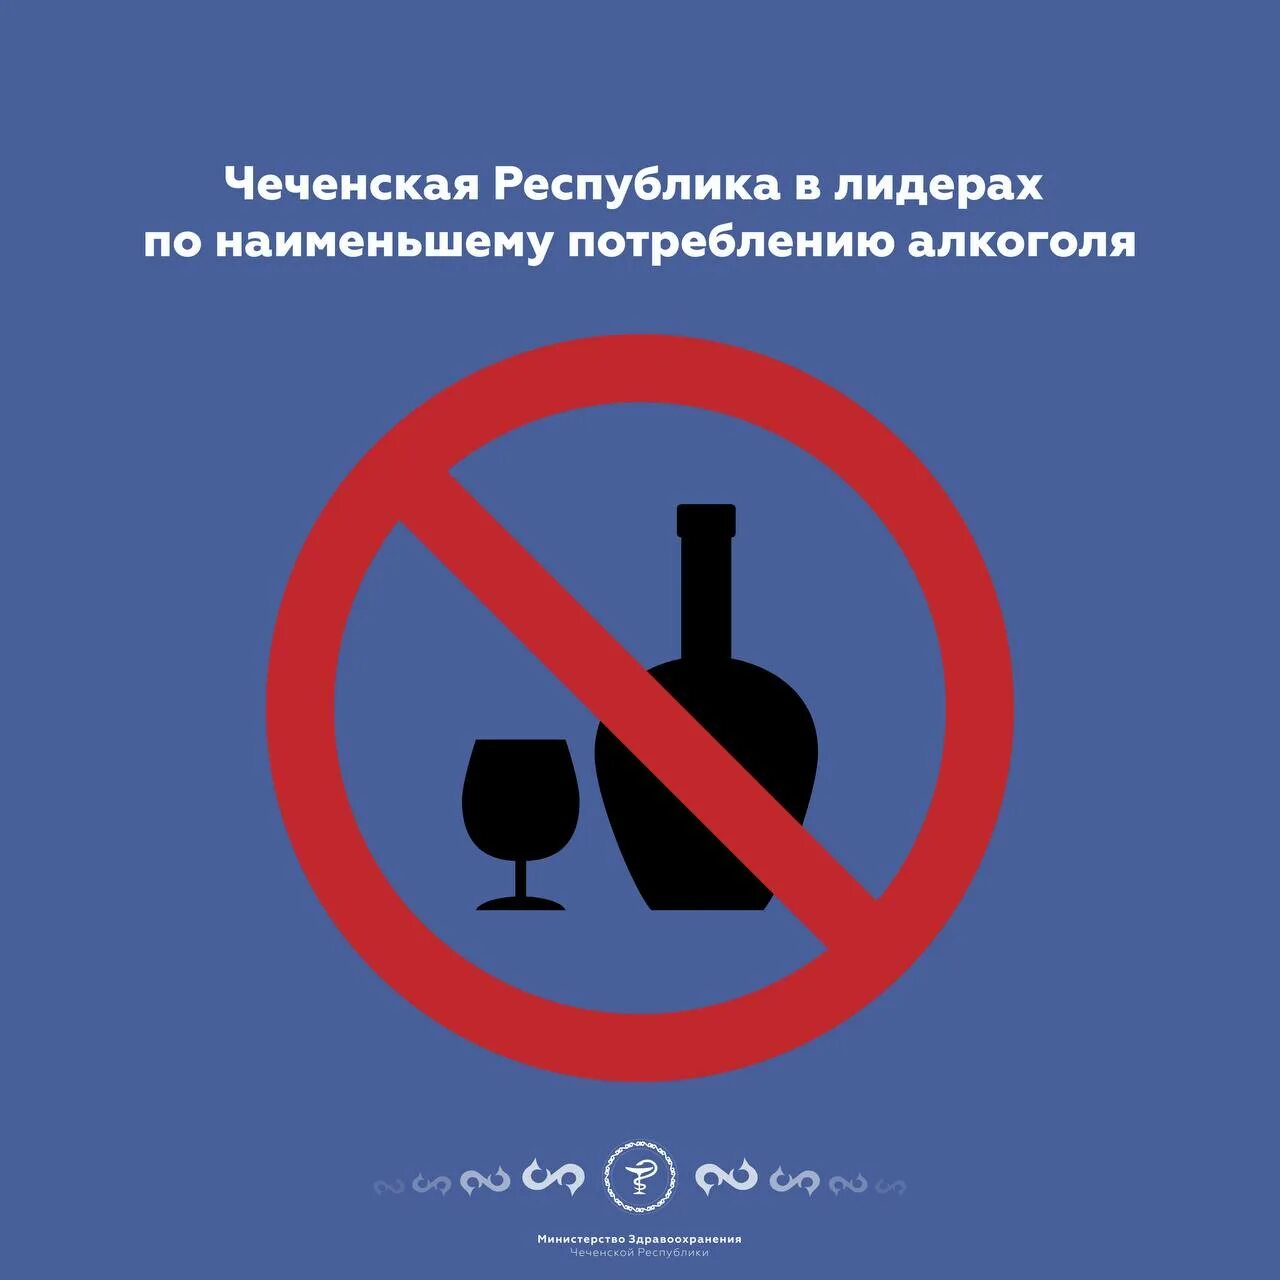 Алкоголь в Чечне. В чечне запретили быструю и медленную музыку